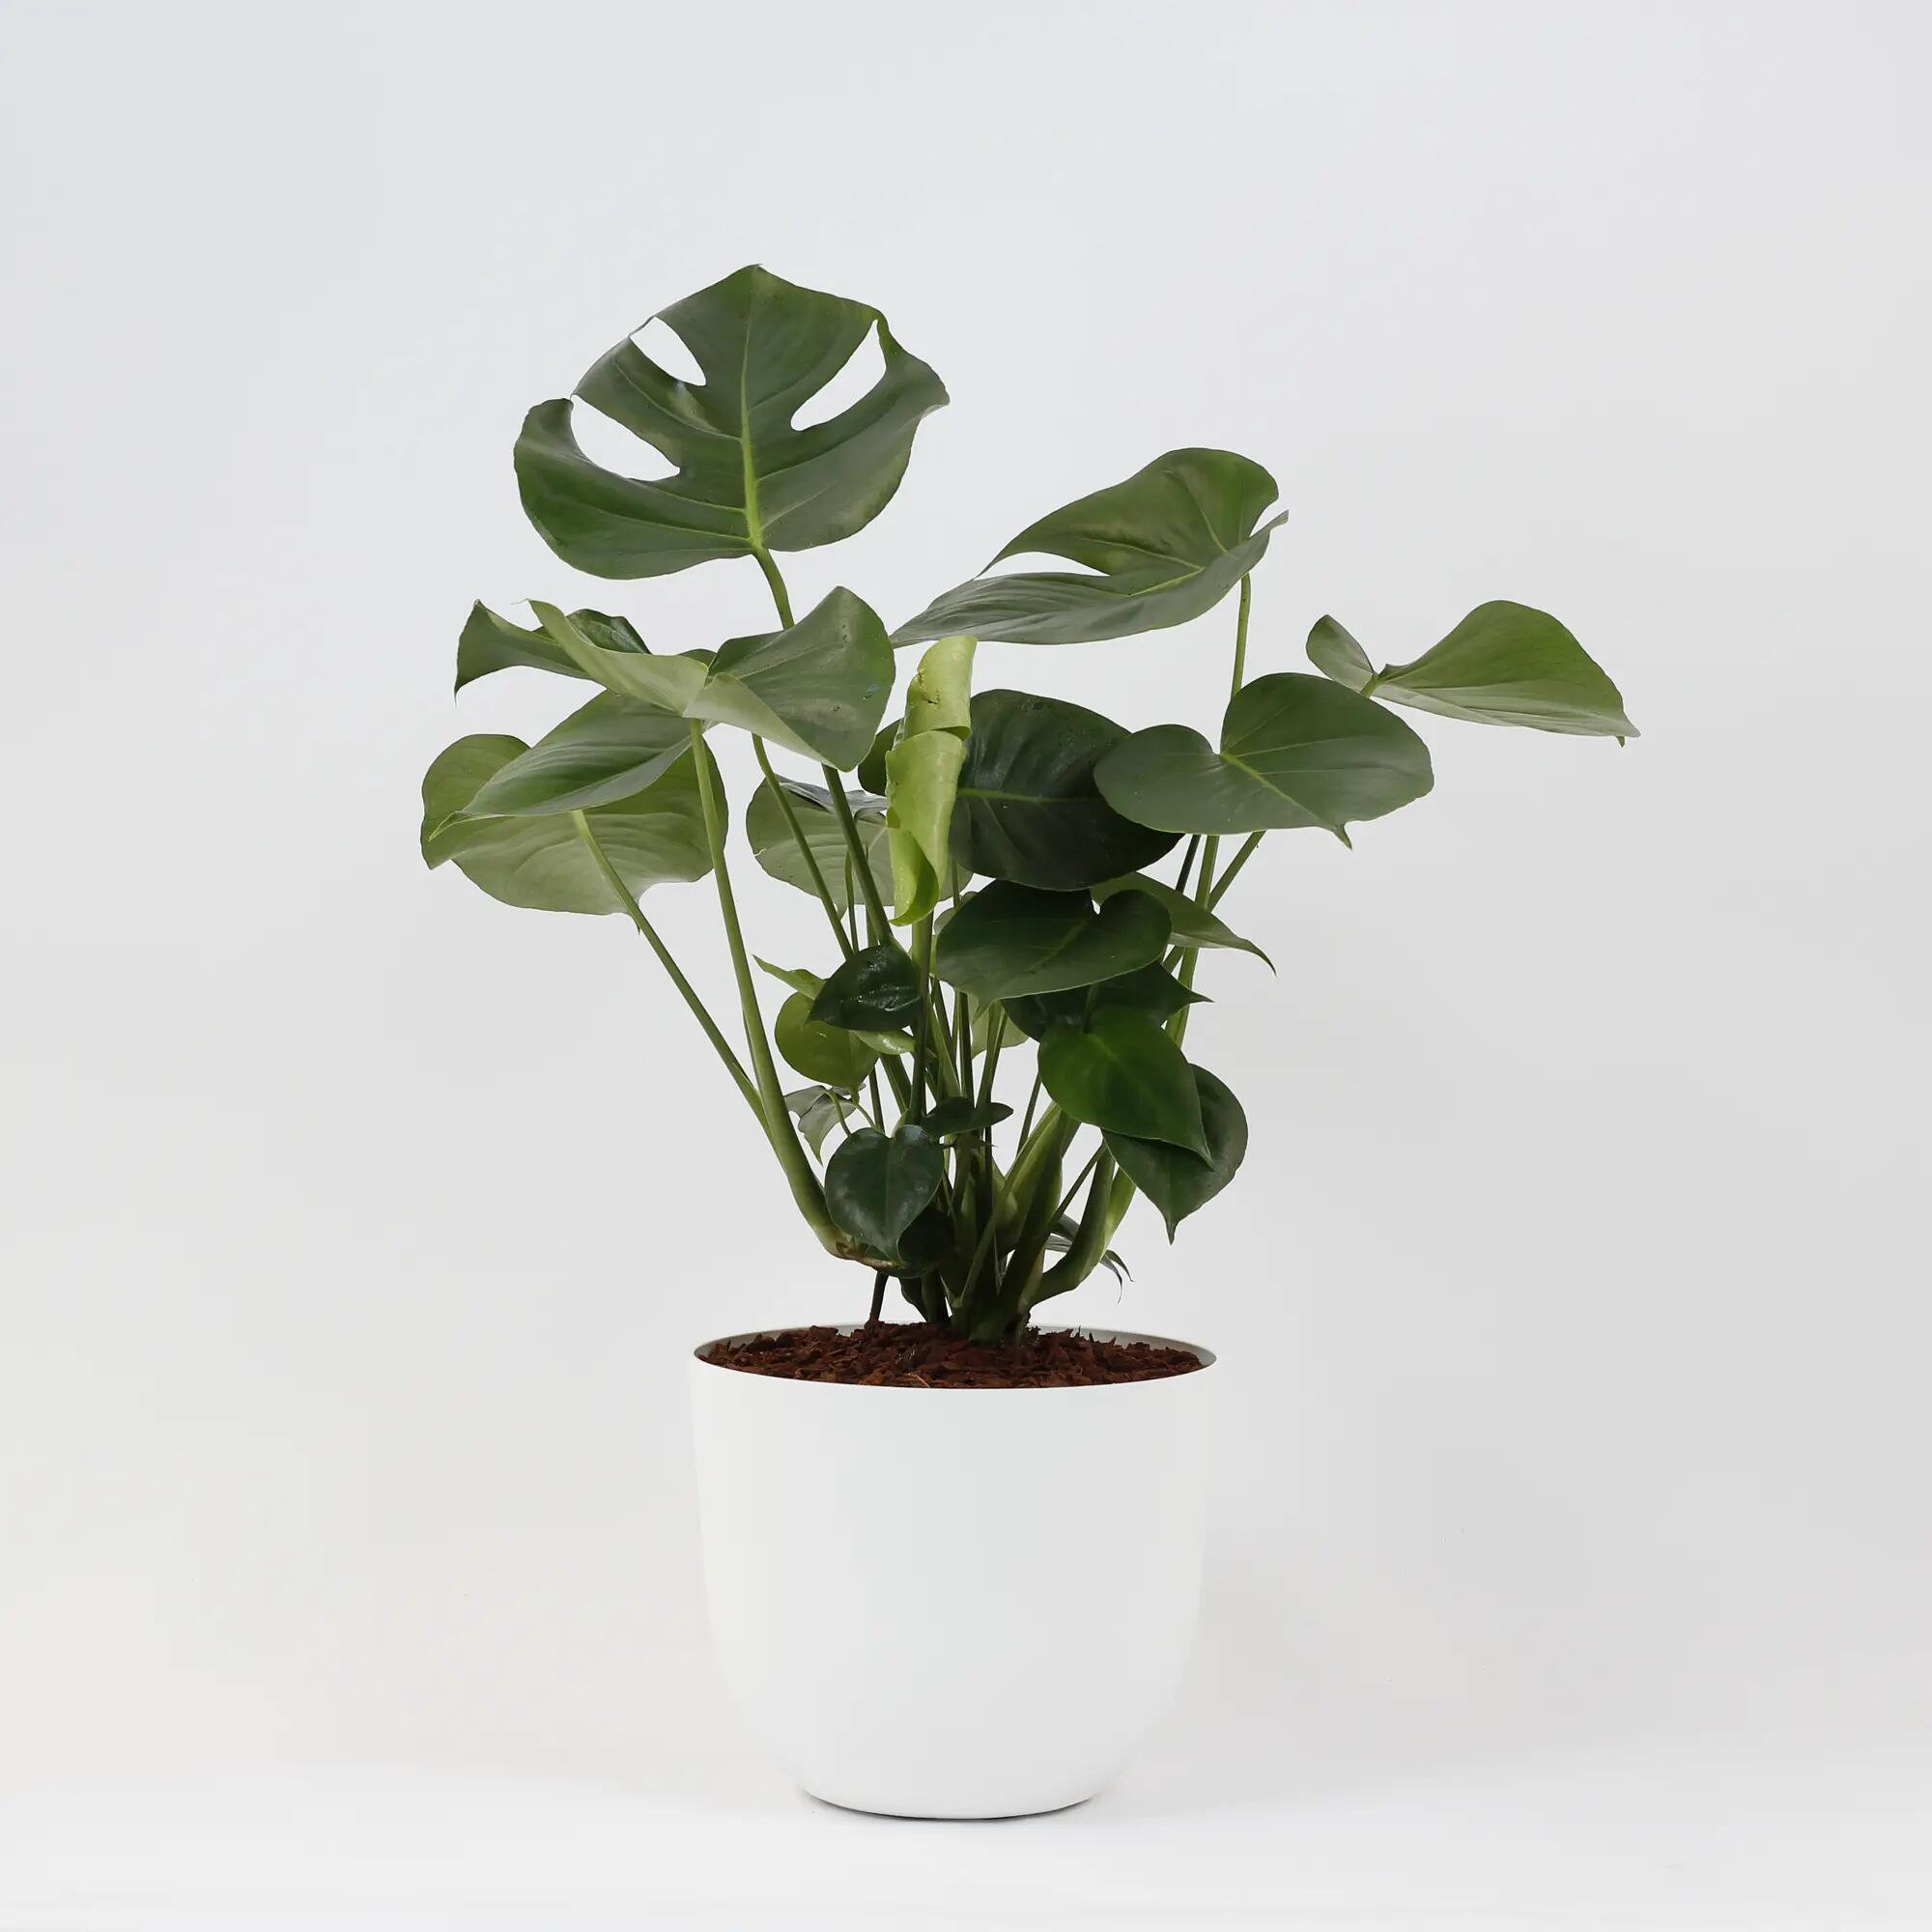 Planta verde monstera deliciosa 110-120 cm en maceta havana blanca de 30 cm